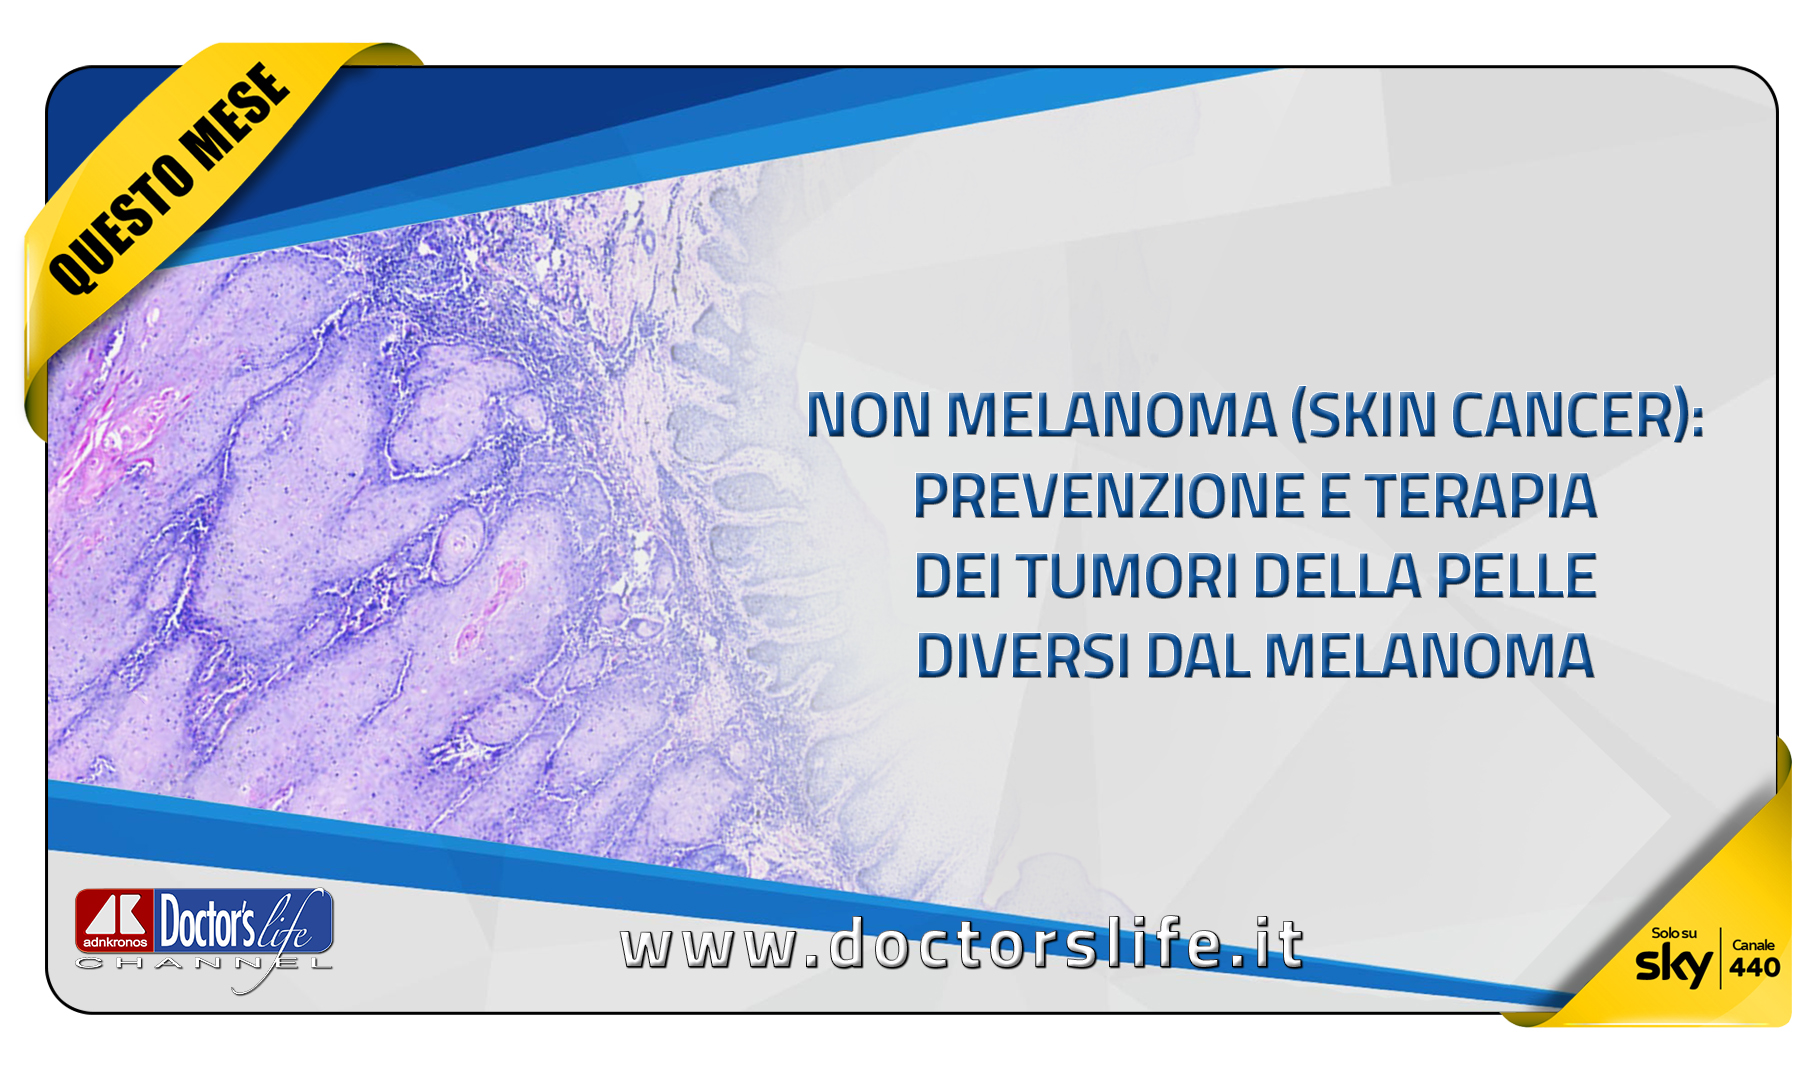 Non melanoma (skin cancer): prevenzione e terapia dei tumori della pelle diversi dal melanoma